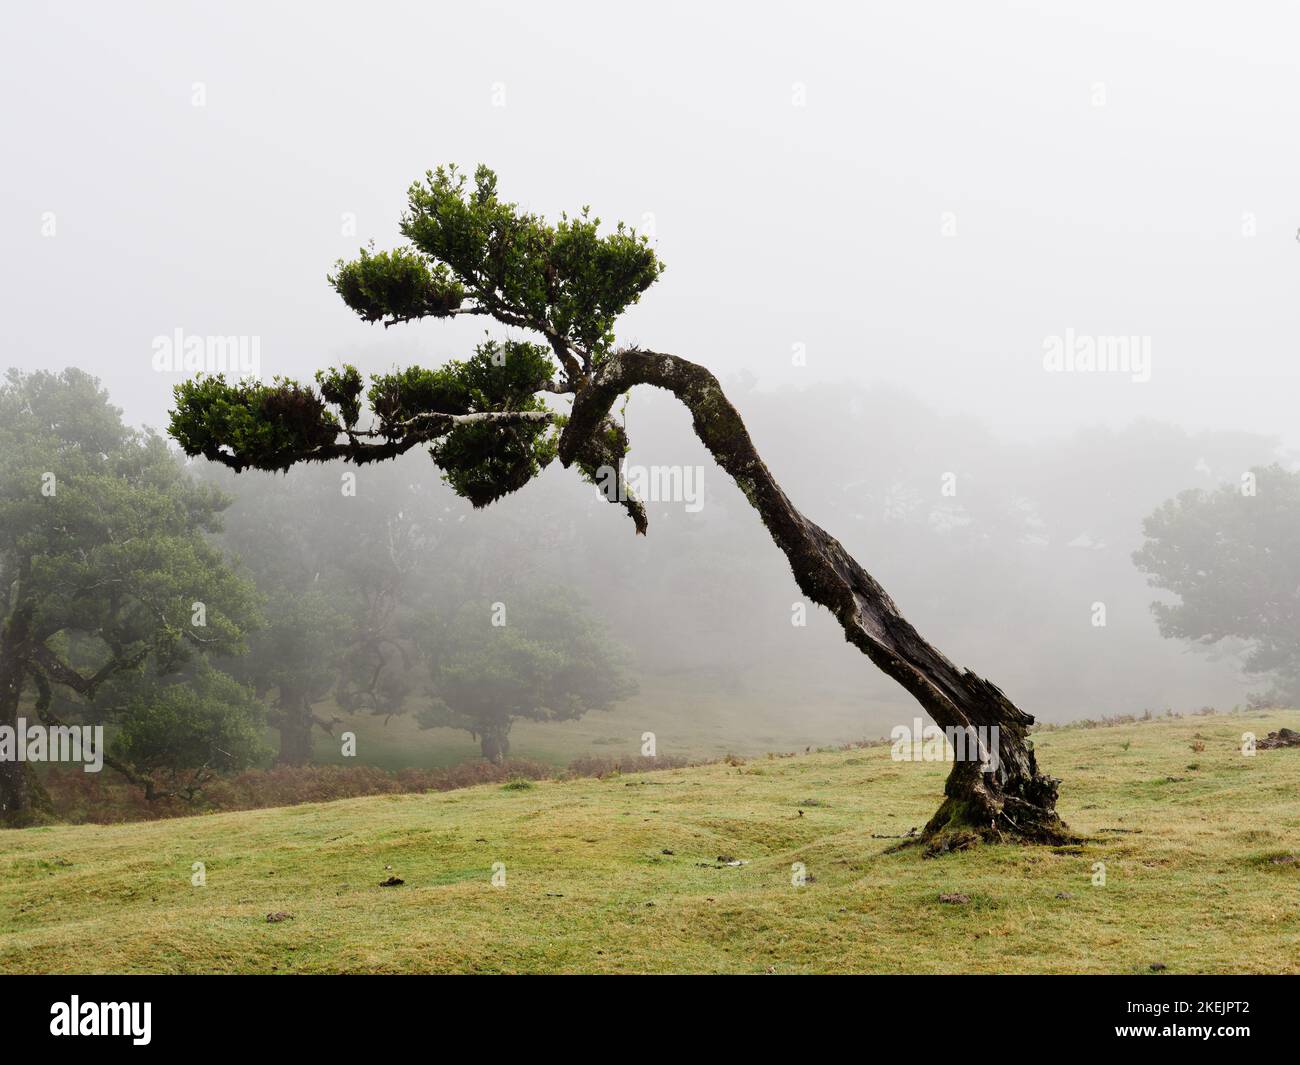 Magisch nebliger Wald und Lorbeerbäume mit ungewöhnlichen Formen, die durch starken Wind und Umgebung verursacht werden. Bereisen Sie die Welt. Laurisilva Madeira Portugal Unesco. Stockfoto